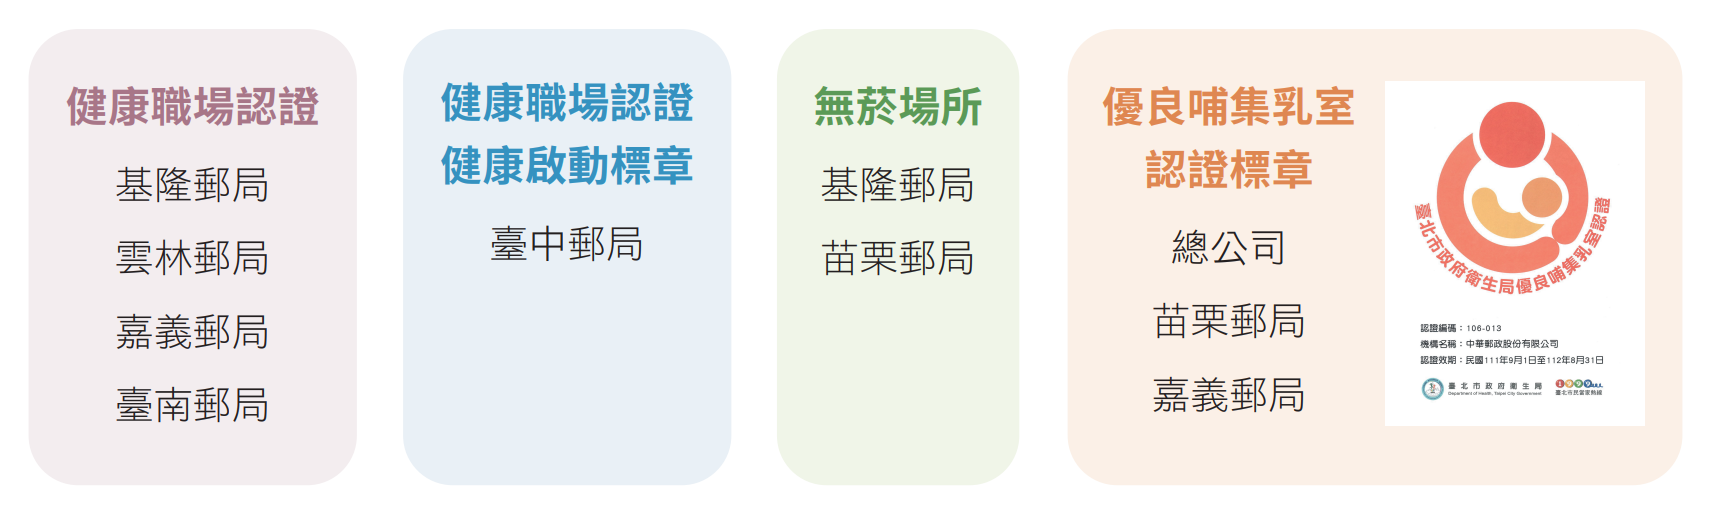 中華郵政提供員工健康工作環境，2022年各營運獲得之認證與標章如下所示：